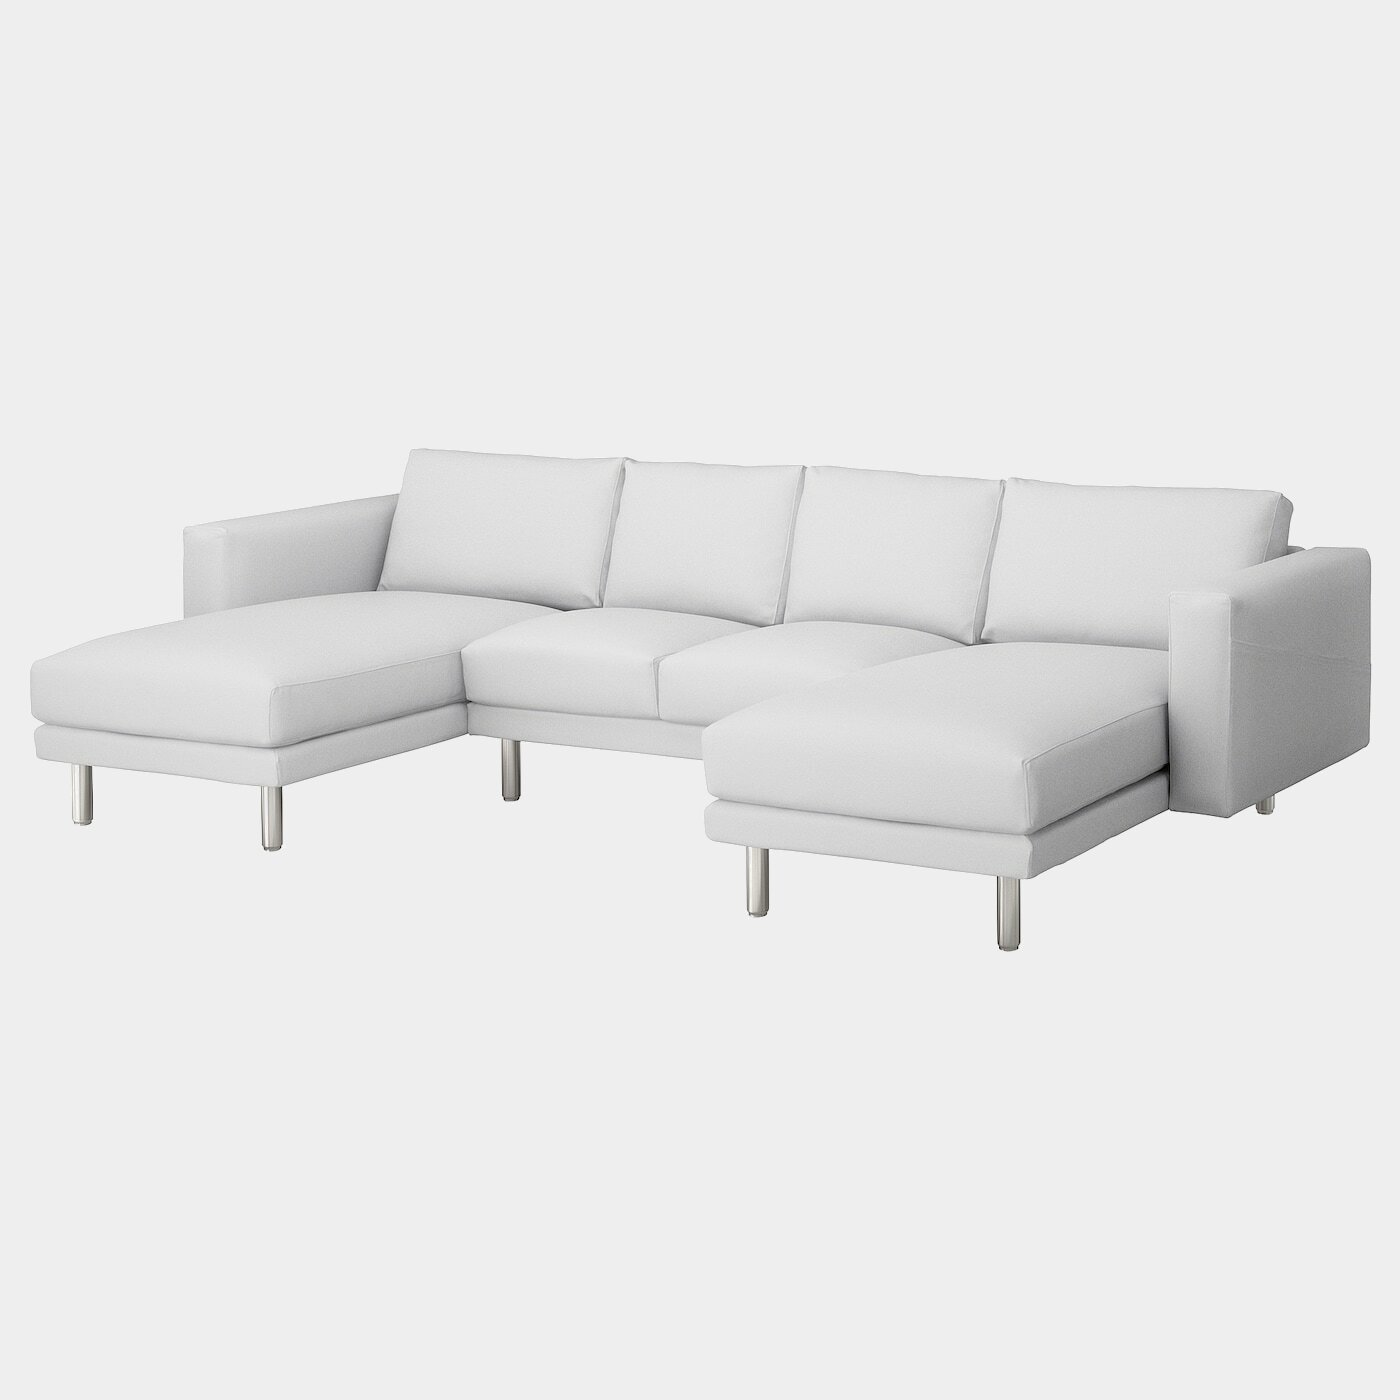 NORSBORG 4er-Sofa  - Sofas, Textil - Möbel Ideen für dein Zuhause von Home Trends. Möbel Trends von Social Media Influencer für dein Skandi Zuhause.